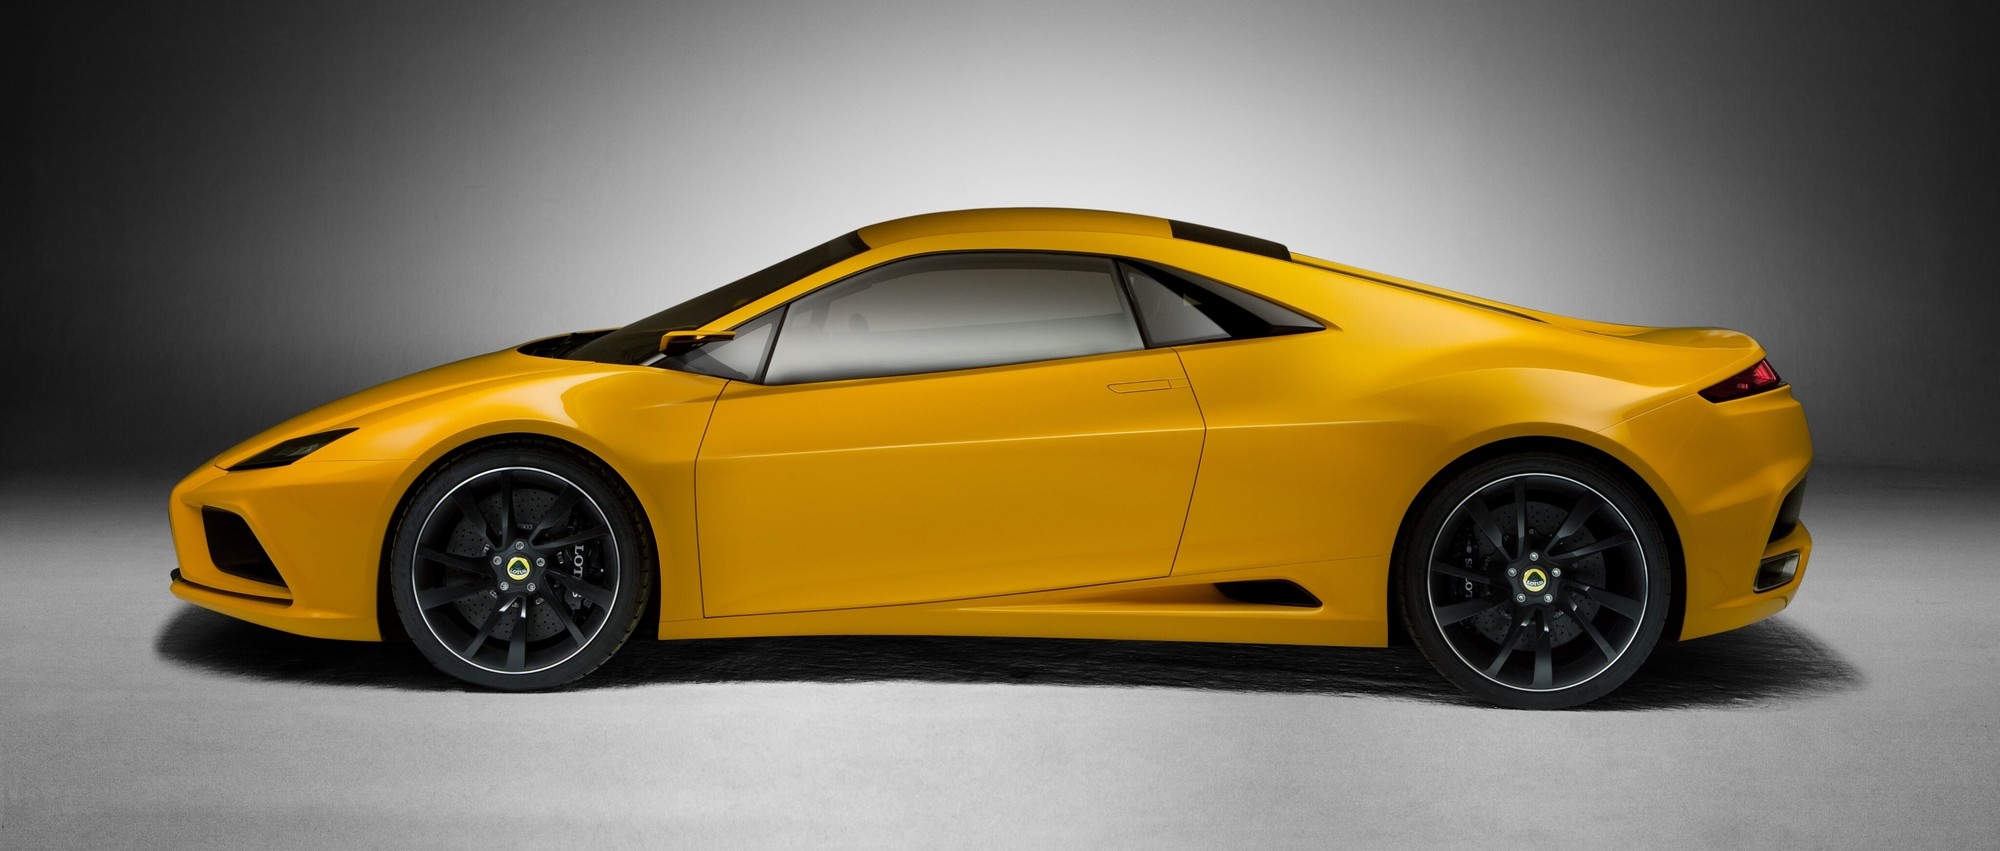 Новый спорткар Lotus: лёгкий, бензиновый и, возможно, с двигателем Geely